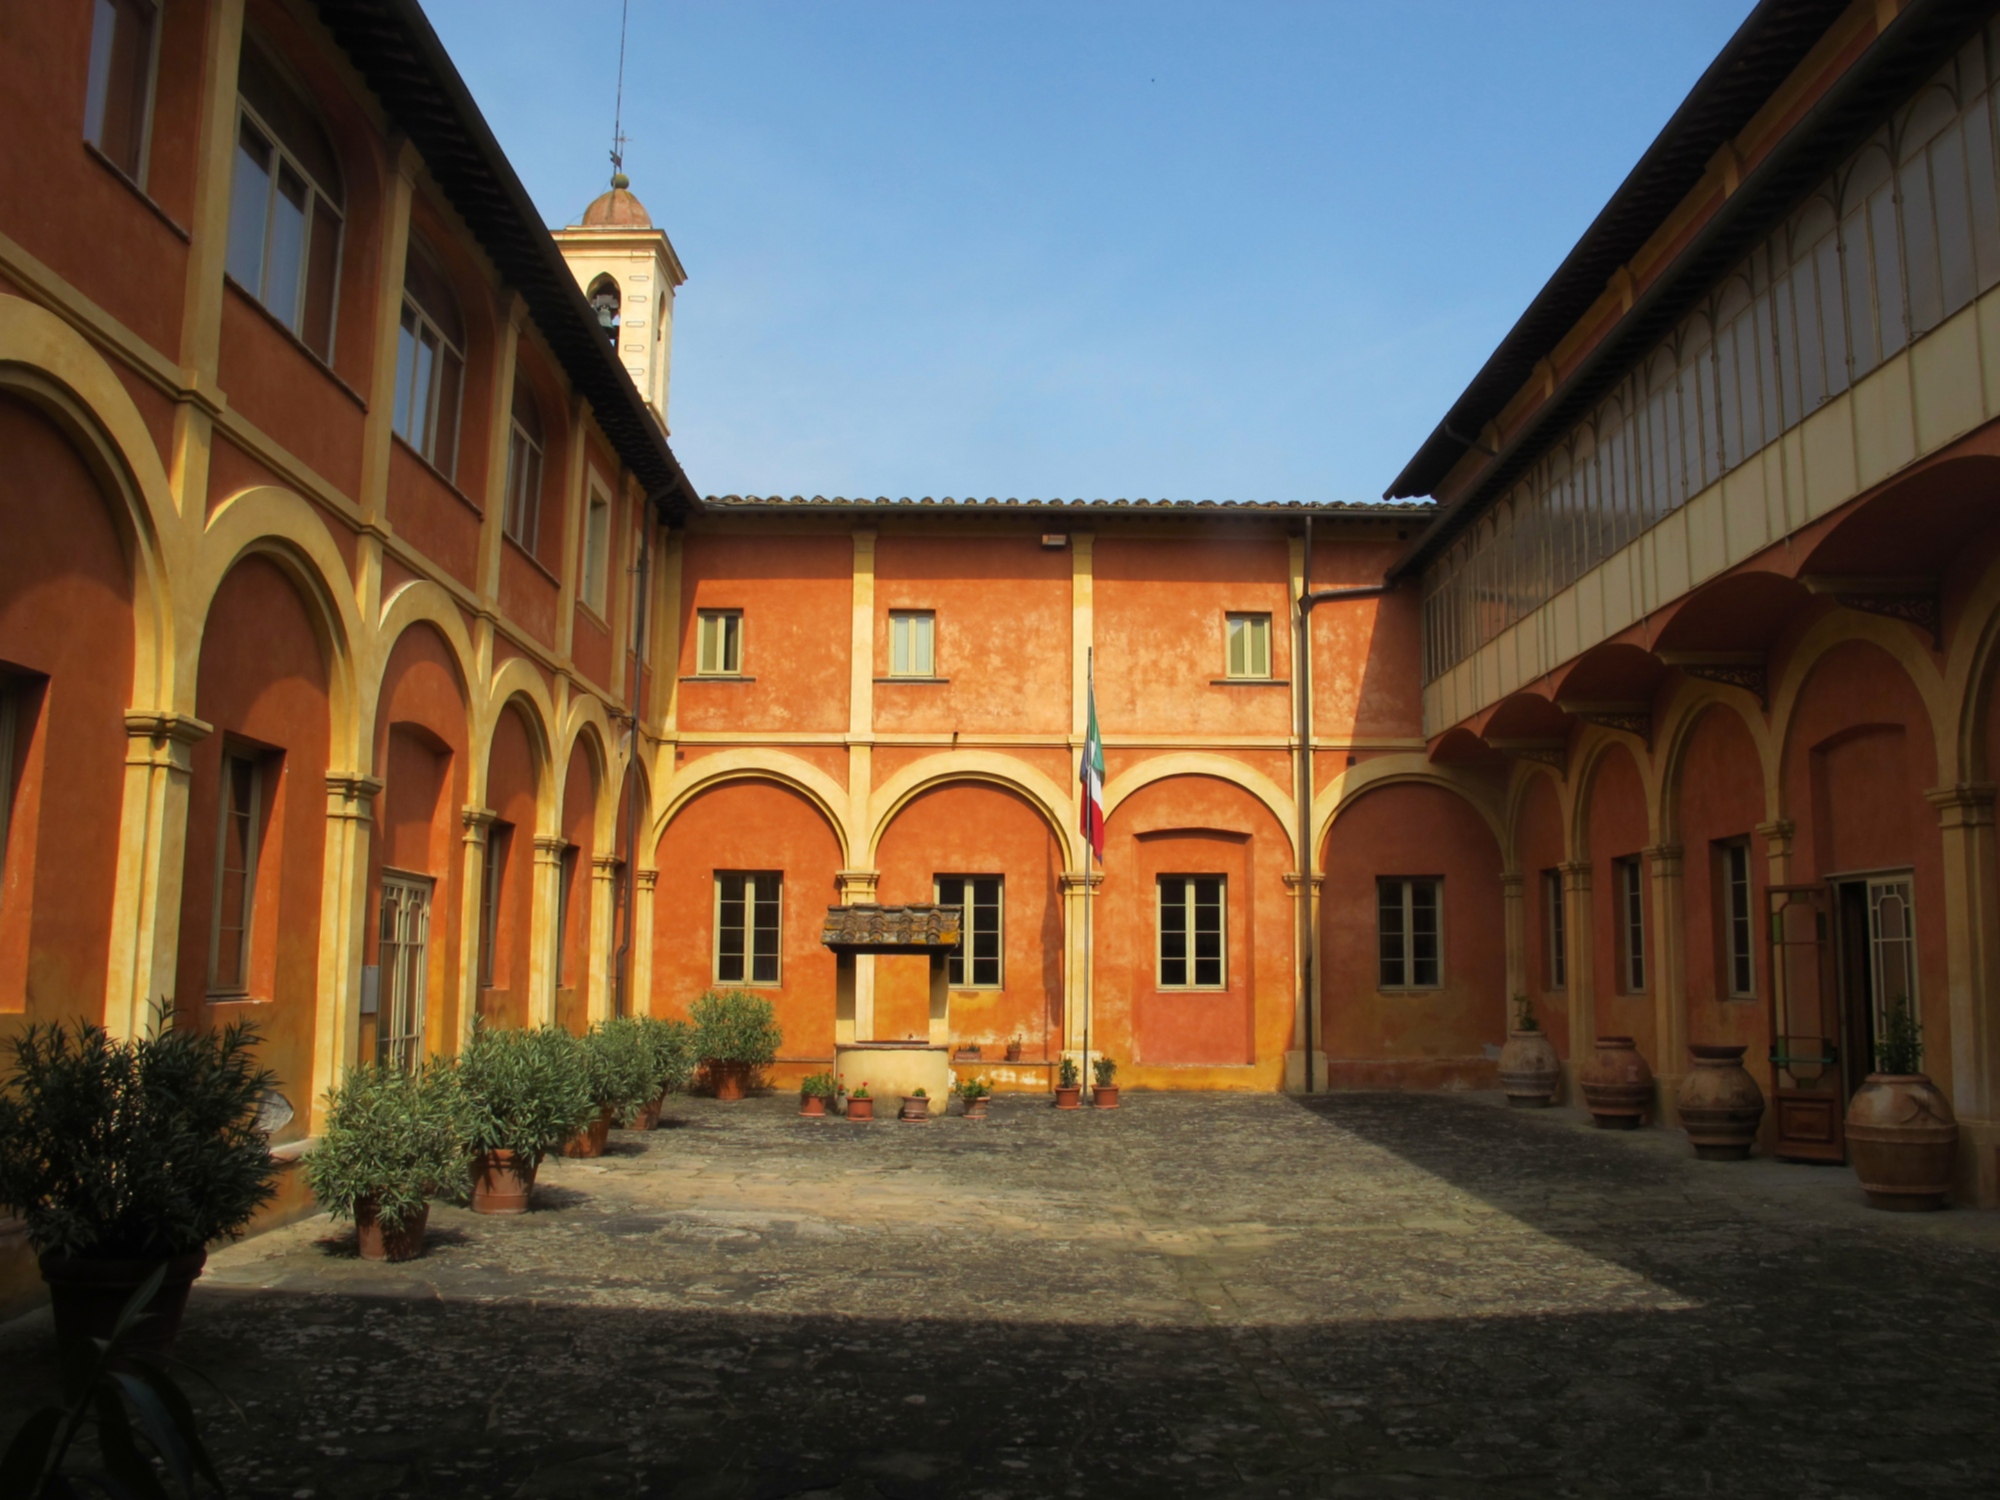 Monastero di Santa Chiara (chiostro), San Miniato